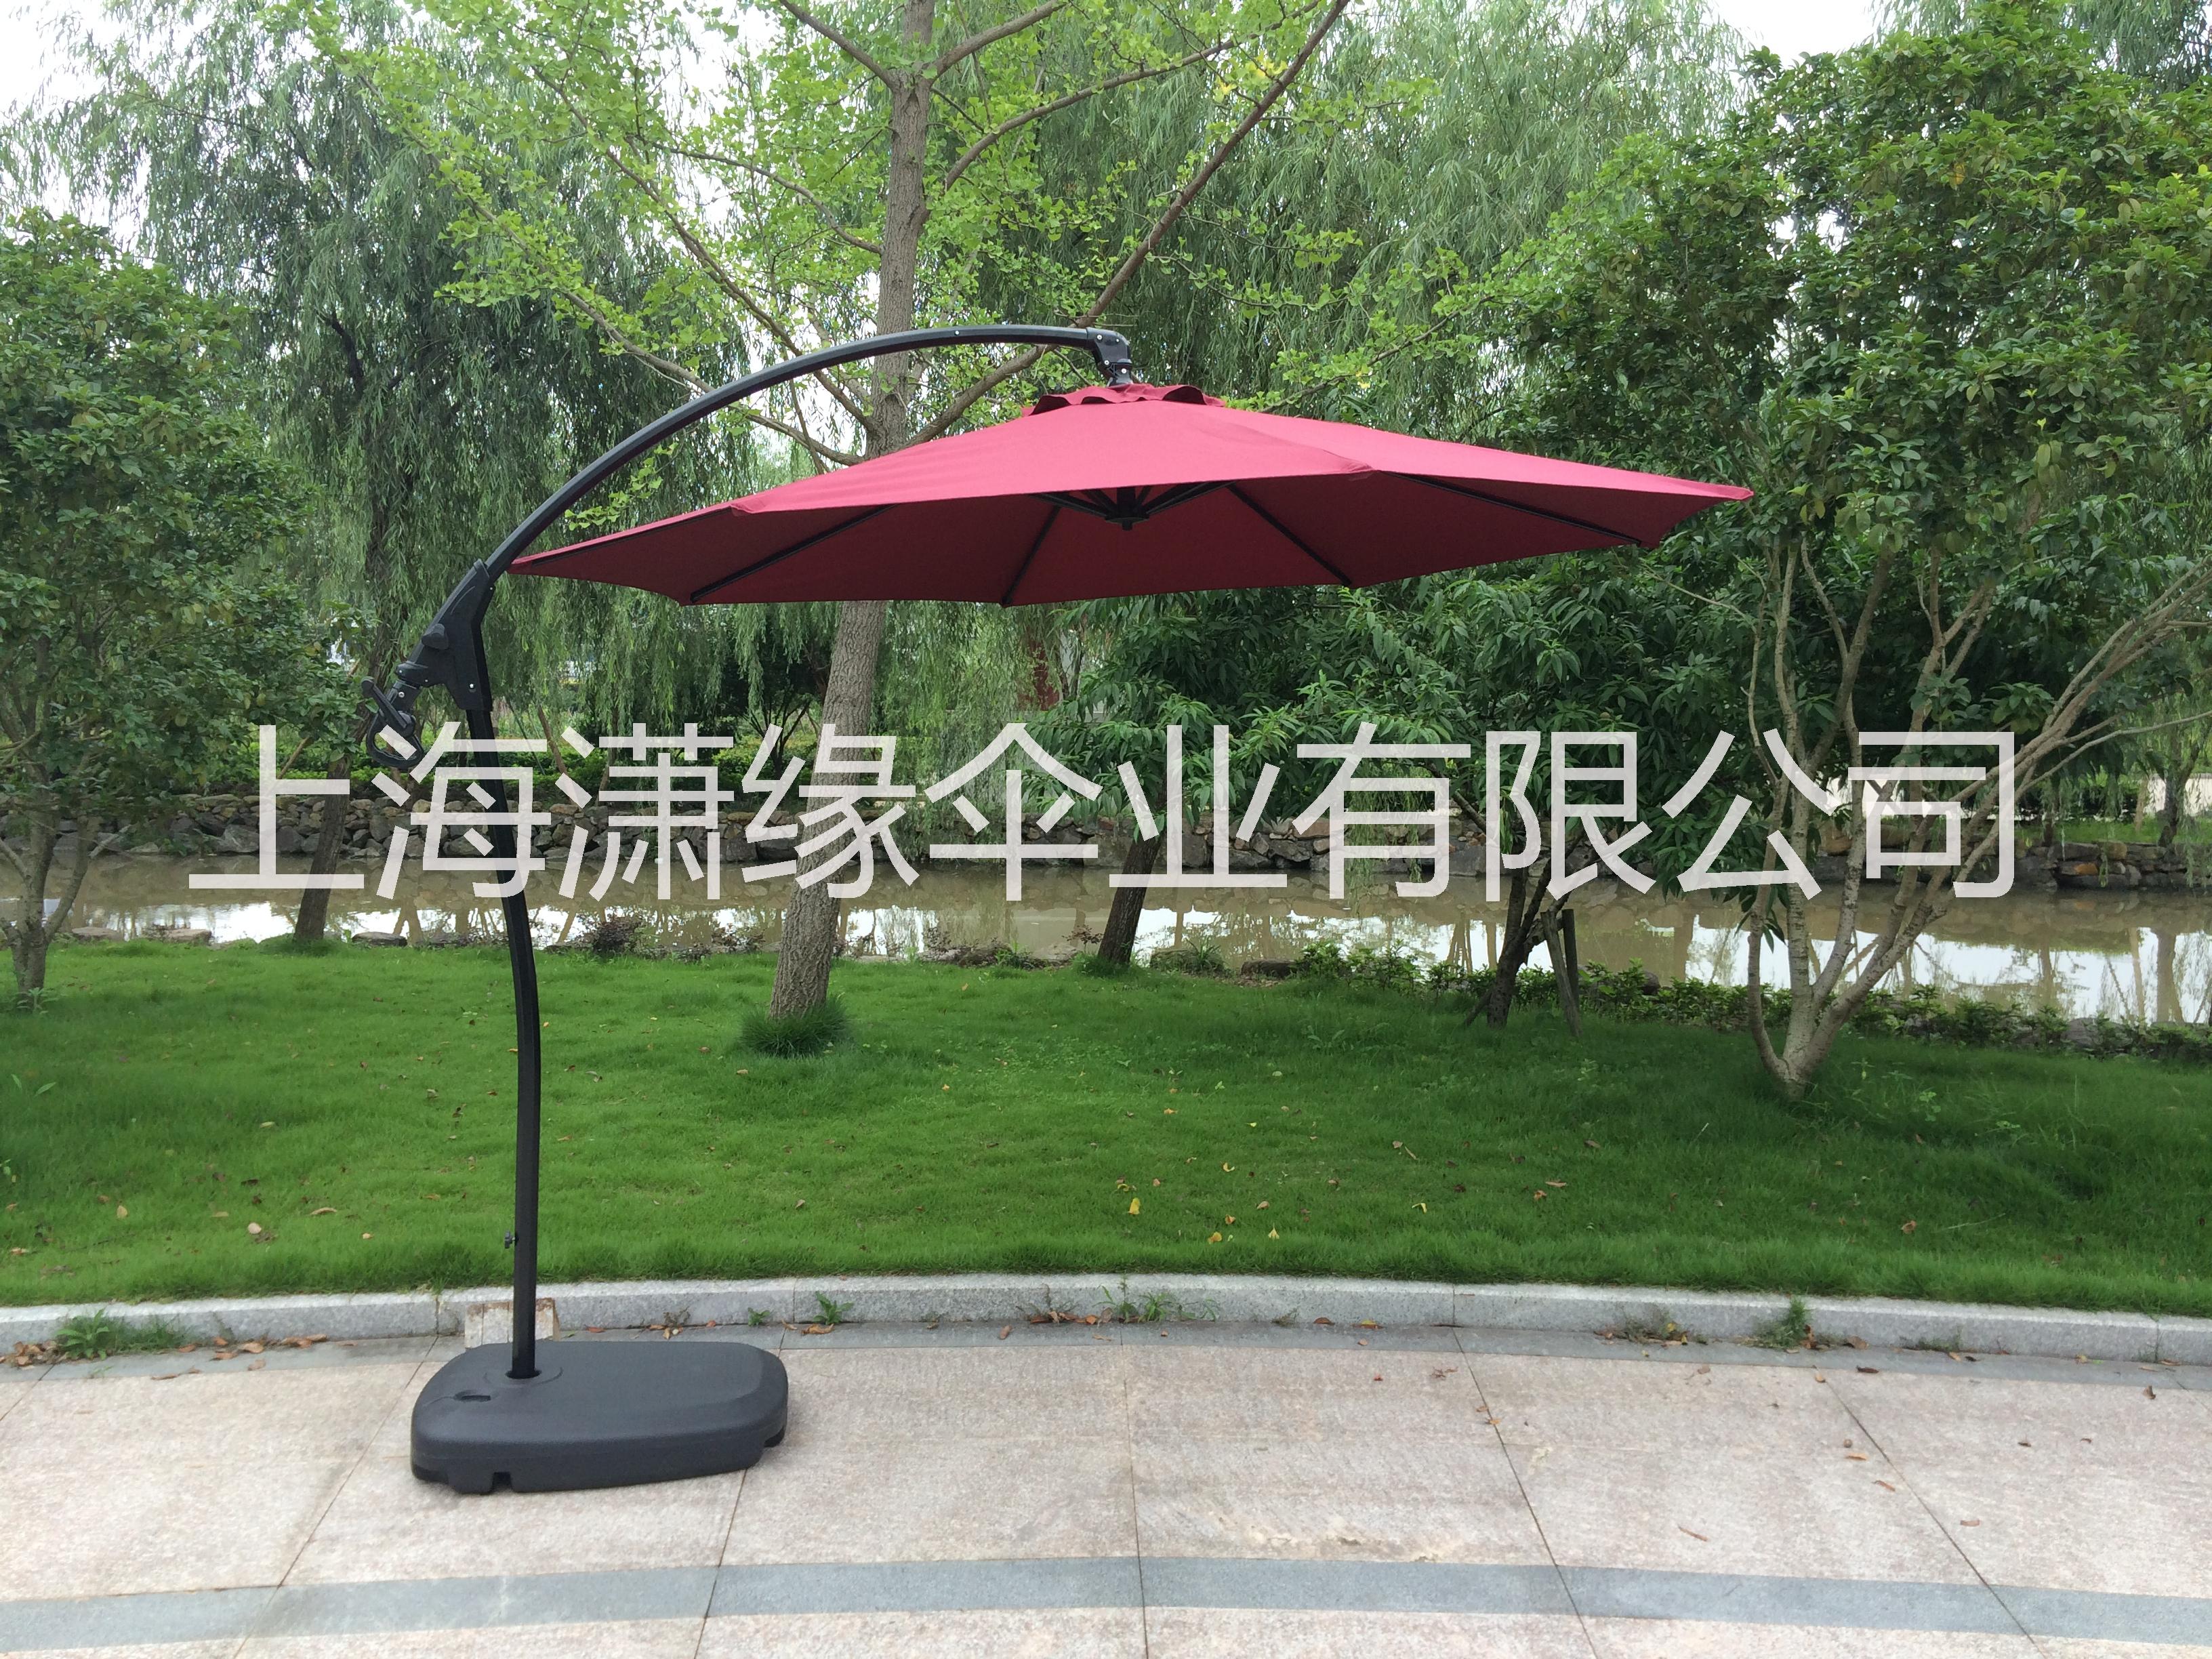 上海香蕉伞批发定制 侧立式庭院伞 沙滩伞厂家直销